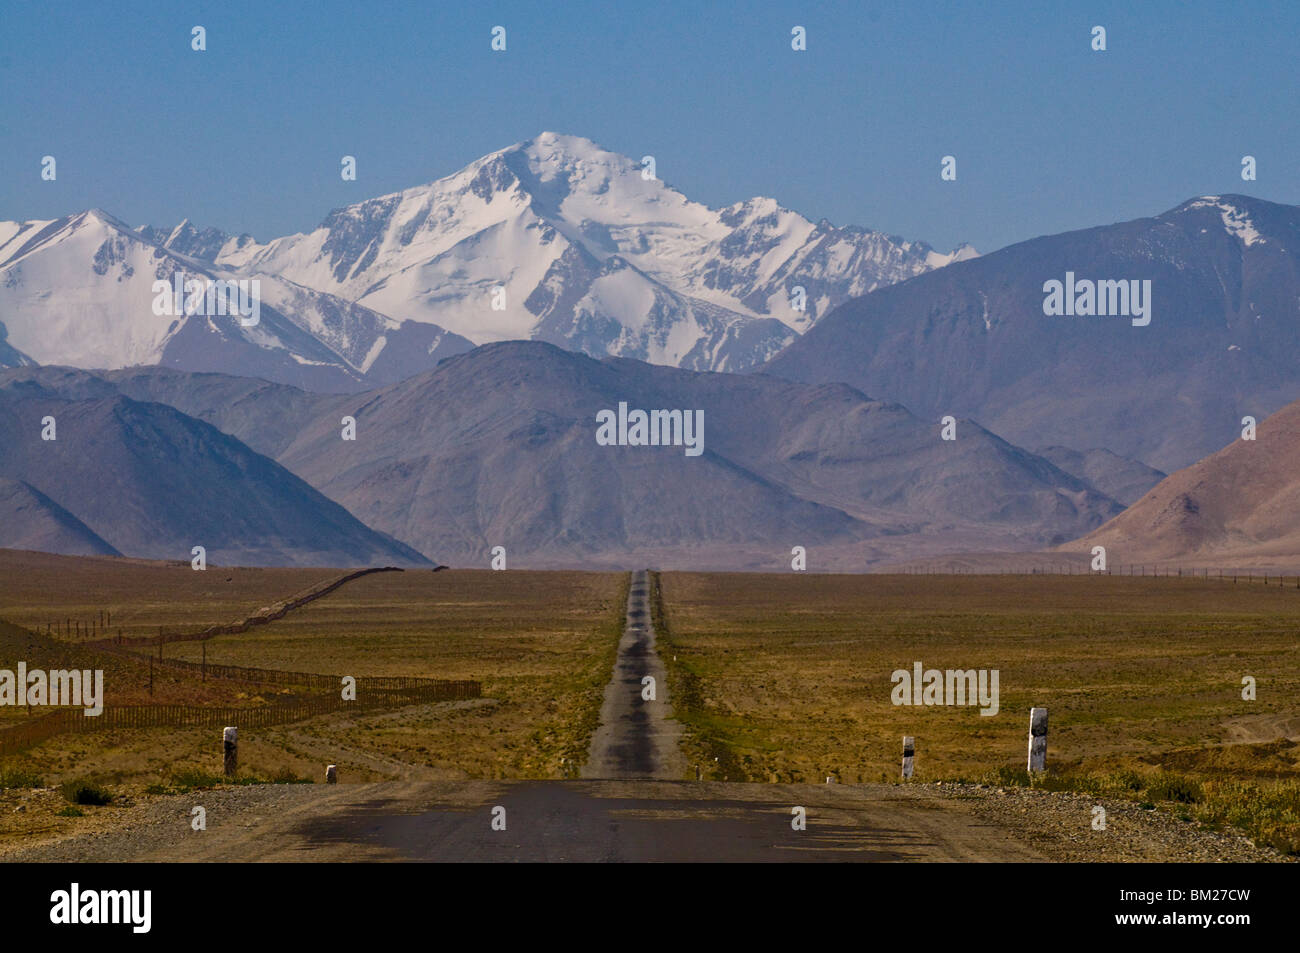 Route de campagne menant à des montagnes enneigées, Karakul, au Tadjikistan, en Asie centrale Banque D'Images